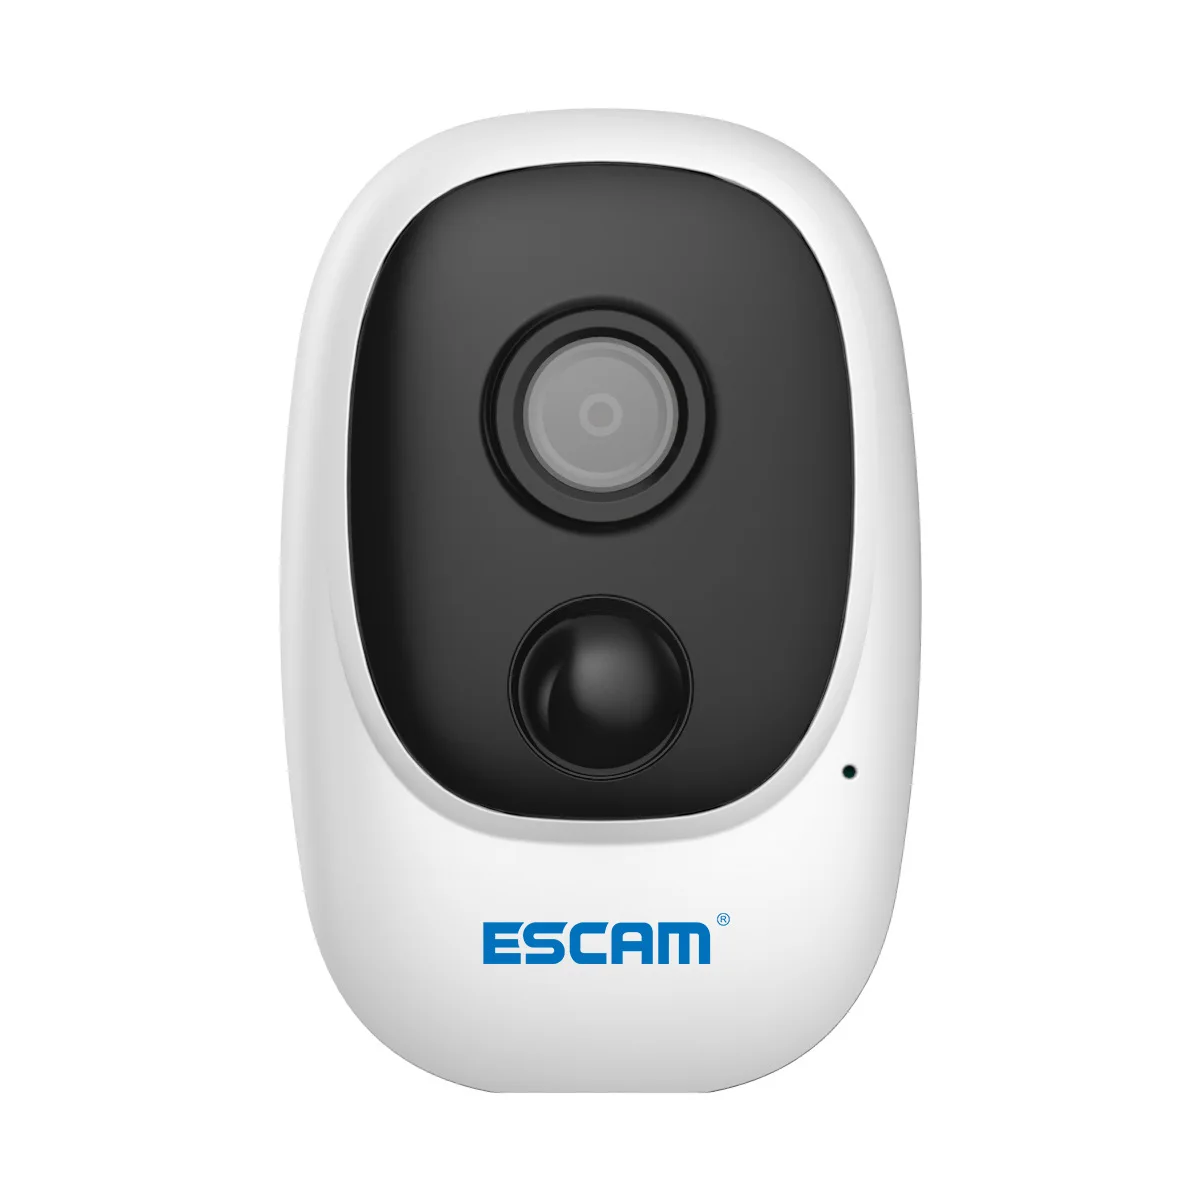 ESCAM G08 IP-камера 1080P HD для наружного наблюдения в помещении, PIR-сигнализация, беспроводная WiFi-камера, камера безопасности с солнечной батареей